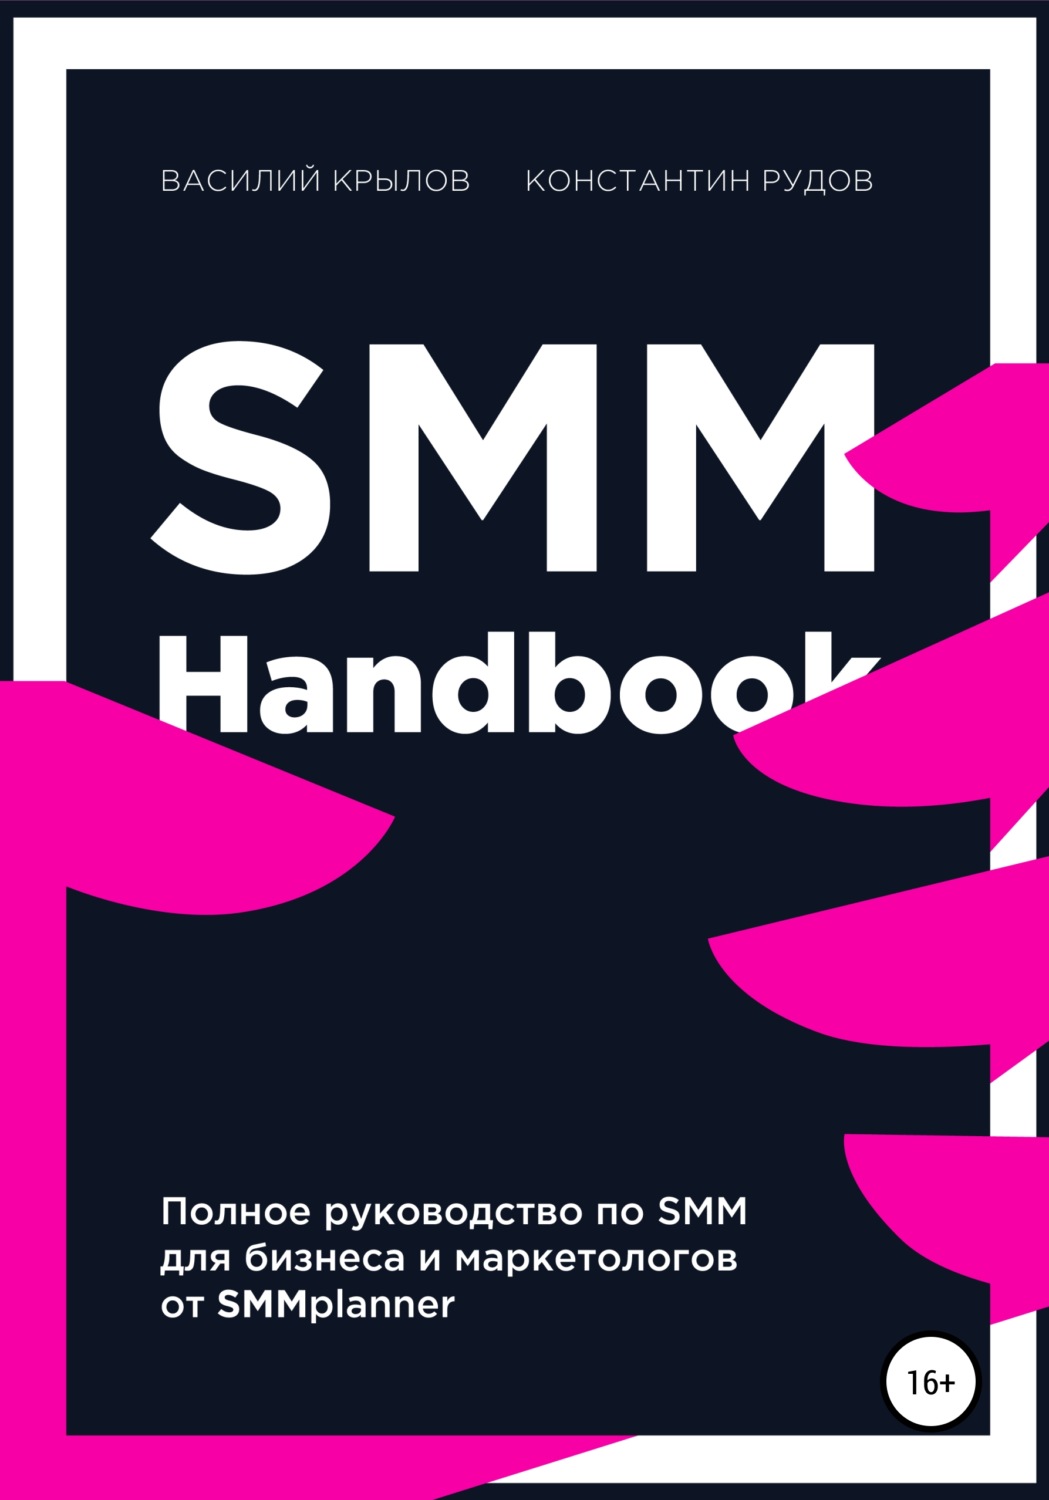 «SMM handbook»